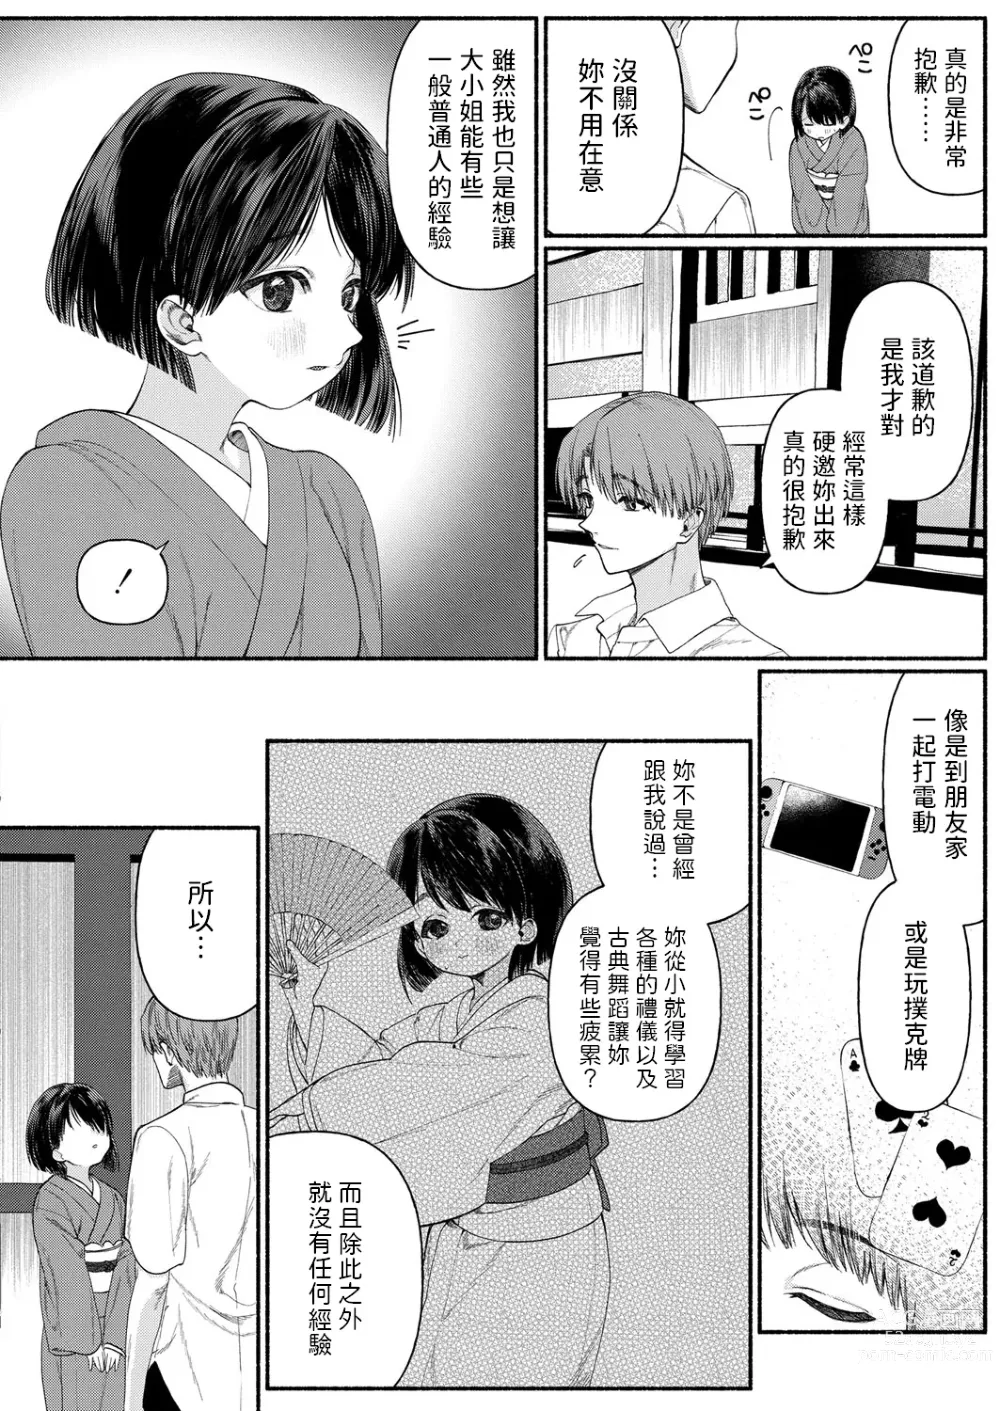 Page 6 of manga Hakoiri Musume wa Pet ni Ochiru -Zenpen-